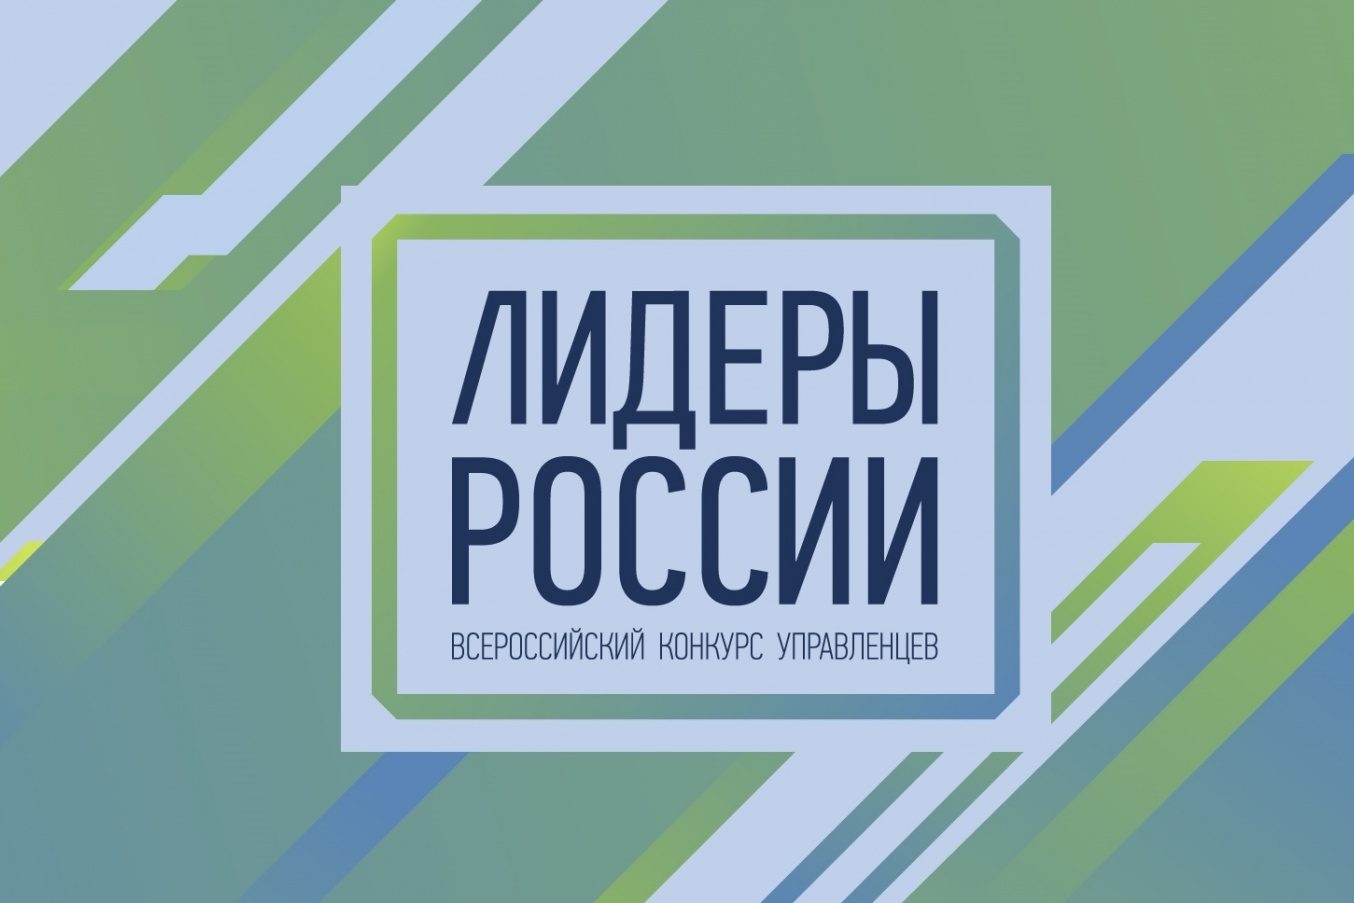 Эмблема конкурса "Лидеры России"